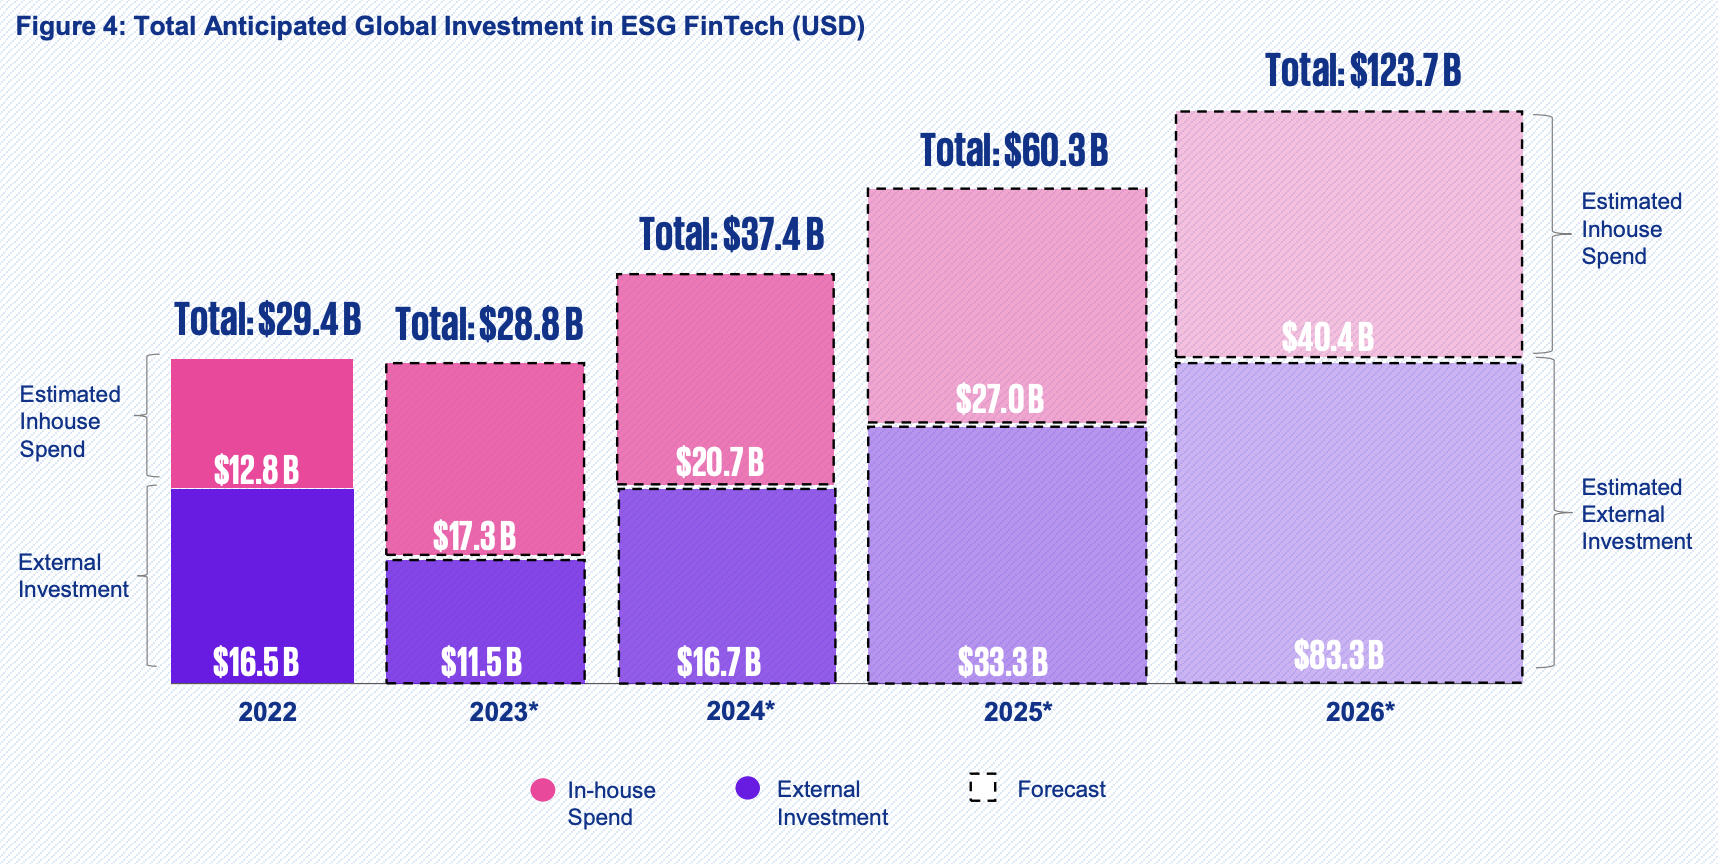 סך ההשקעה הגלובלית הצפויה בפינטק ESG (דולר ארה"ב)